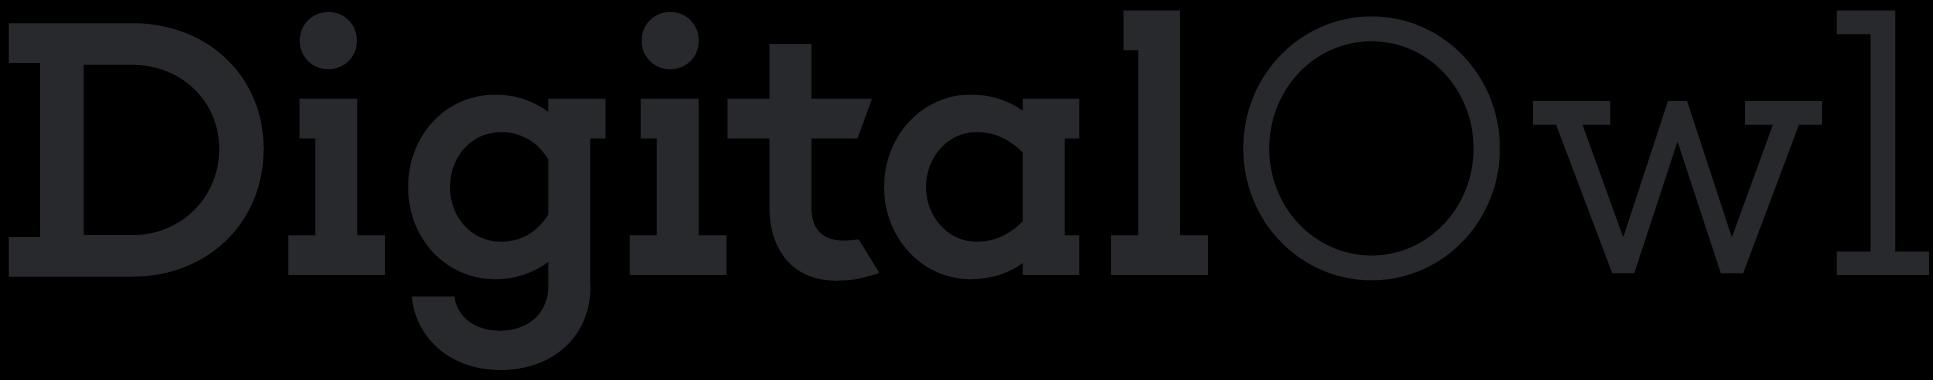 DigitalOwl_logo